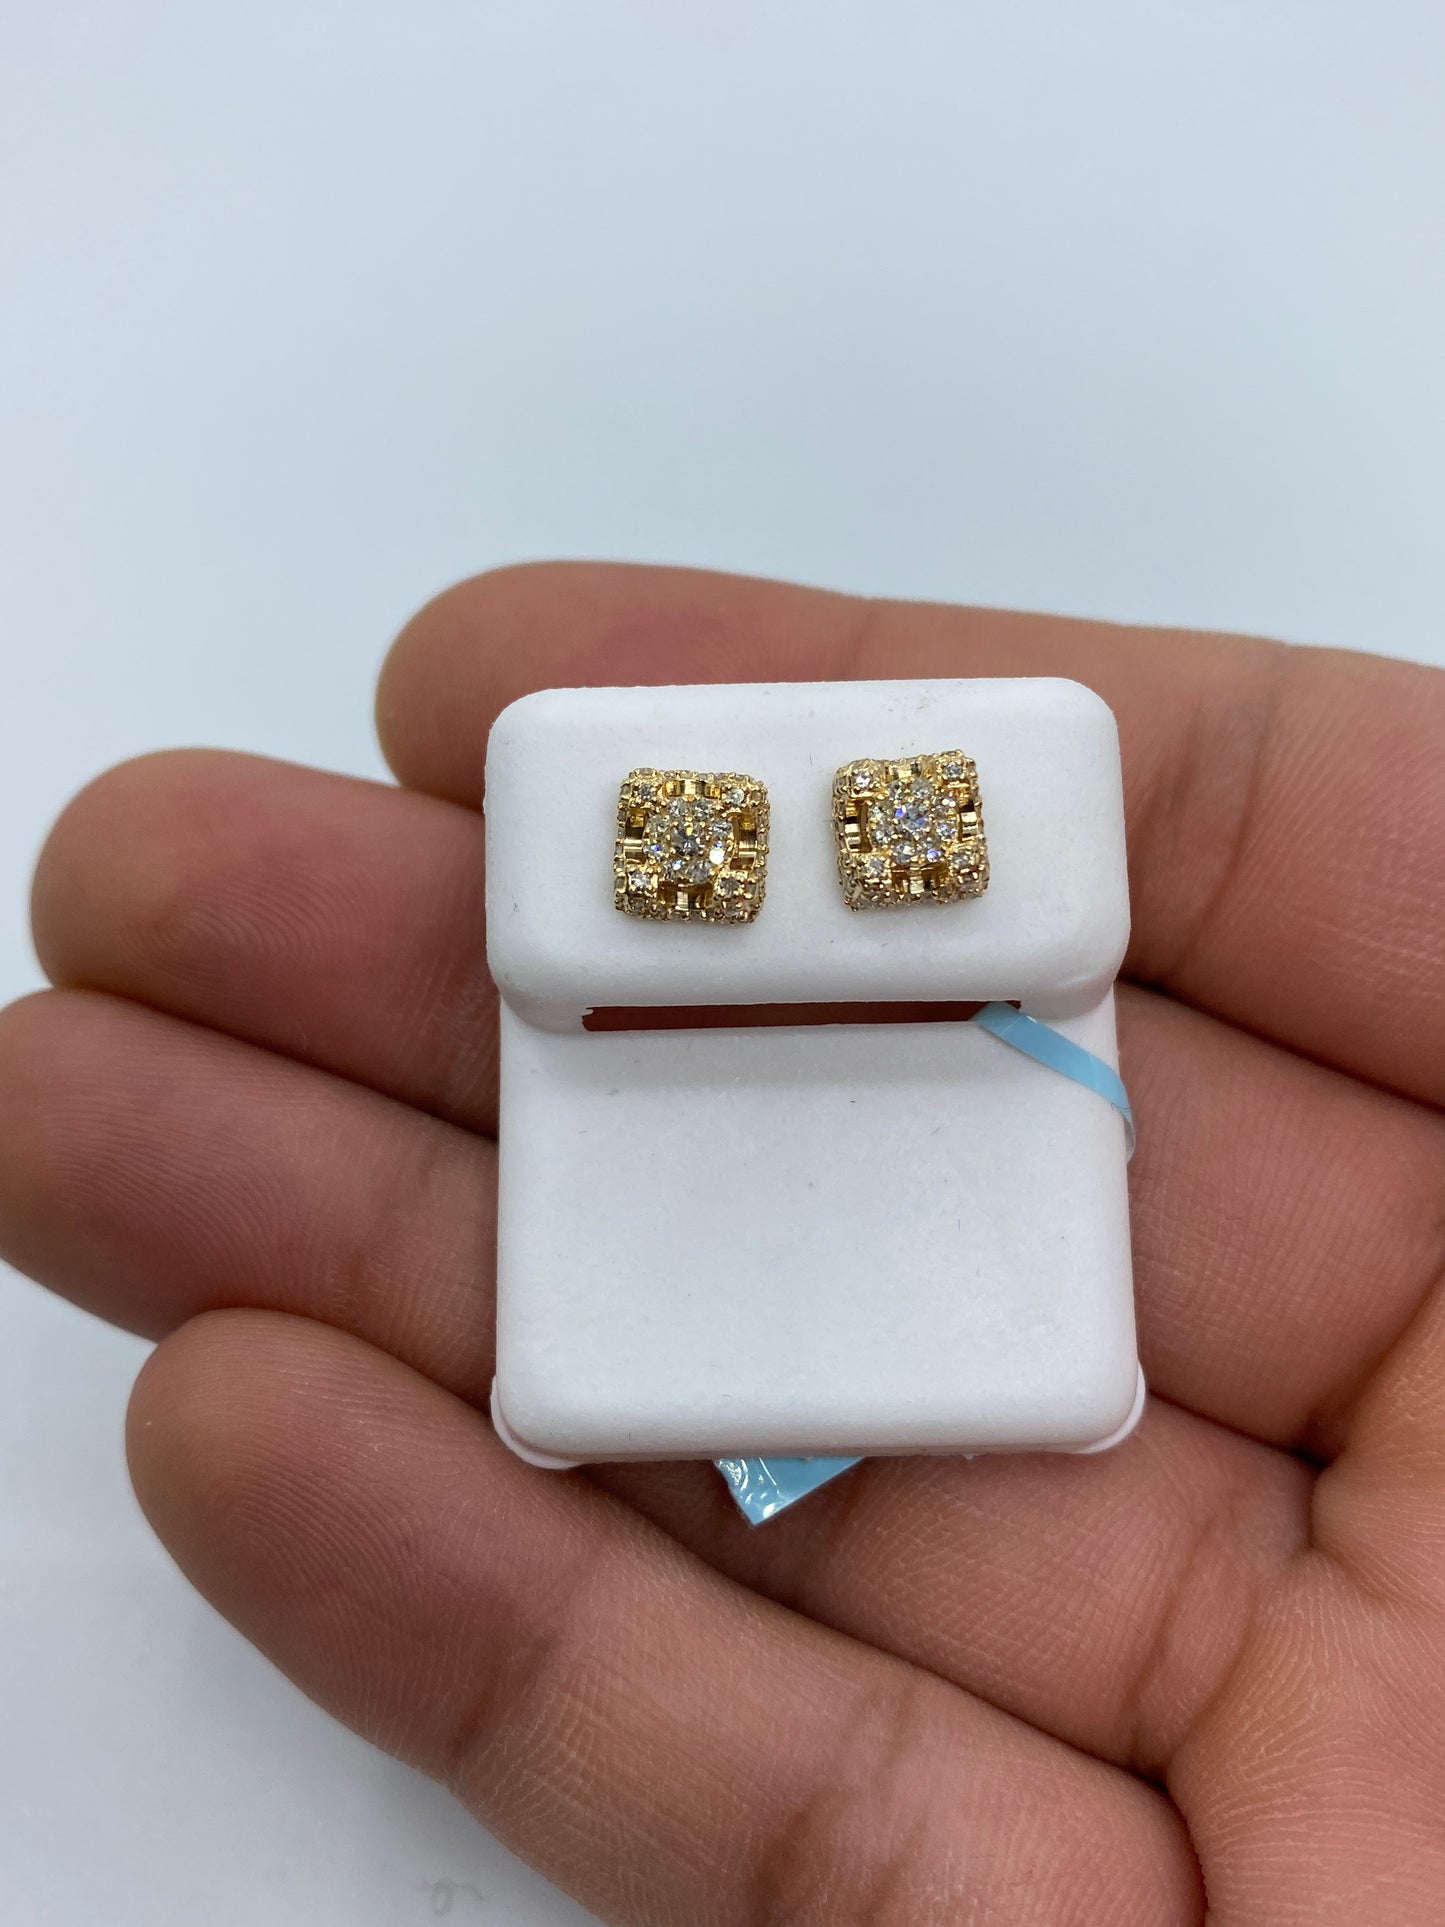 Castle Earrings Small